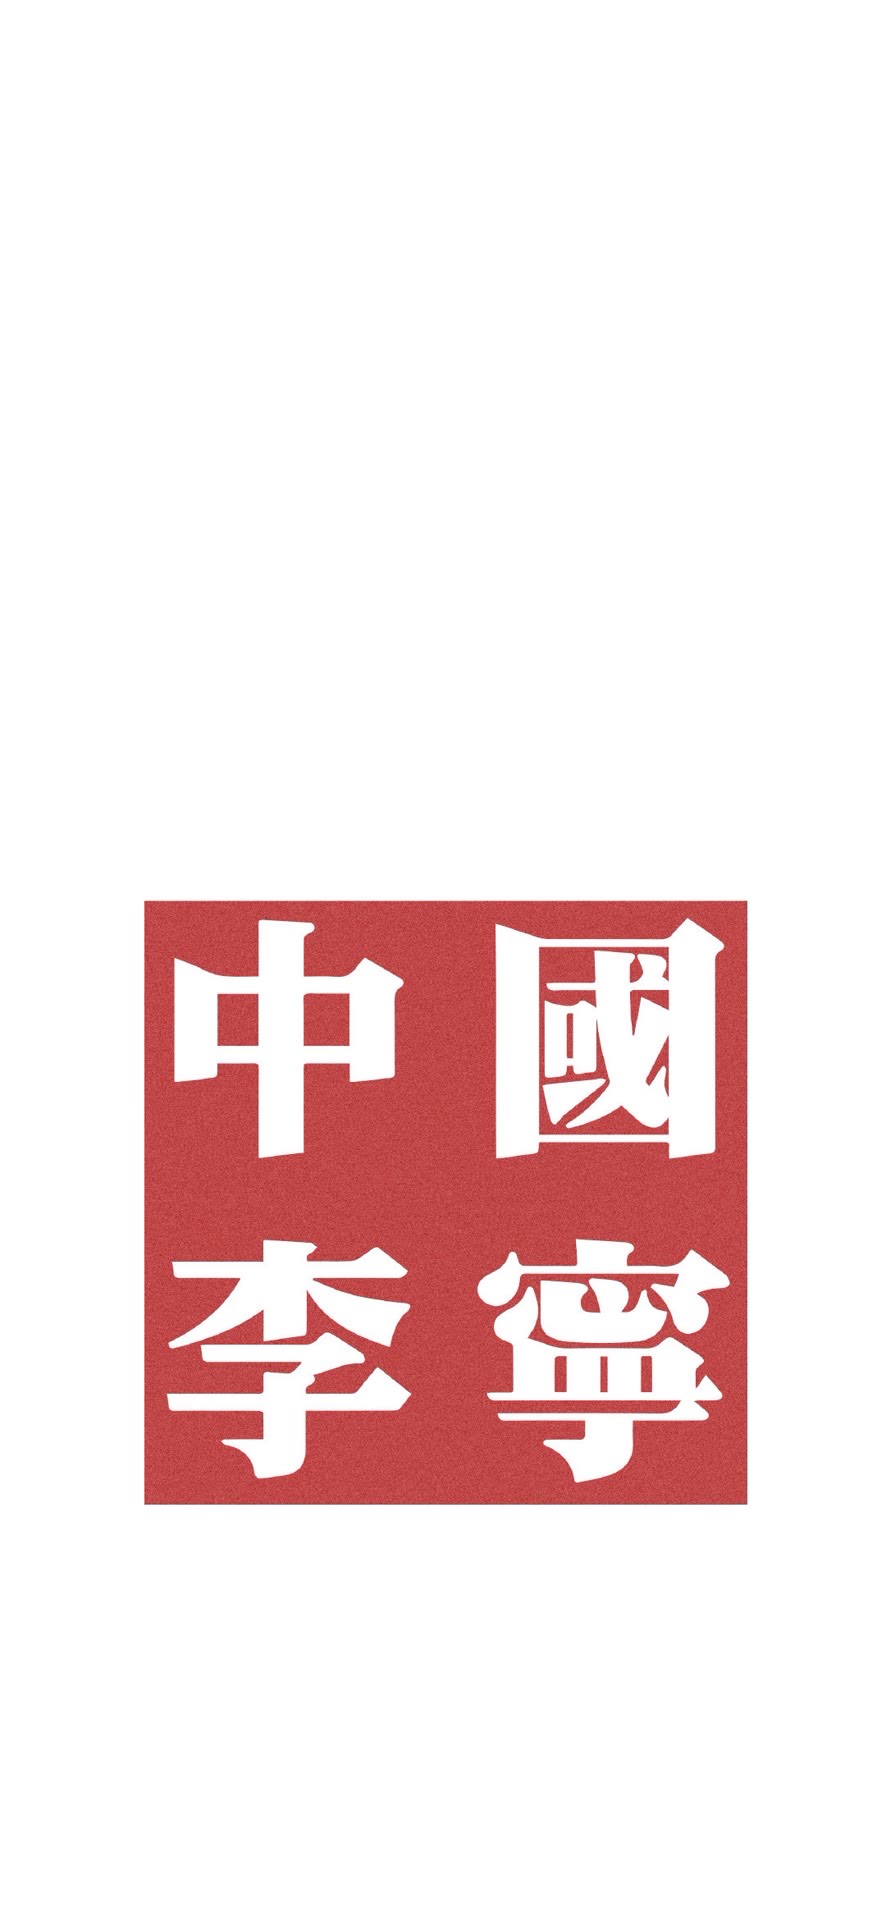 李宁logo高清手机壁纸图片